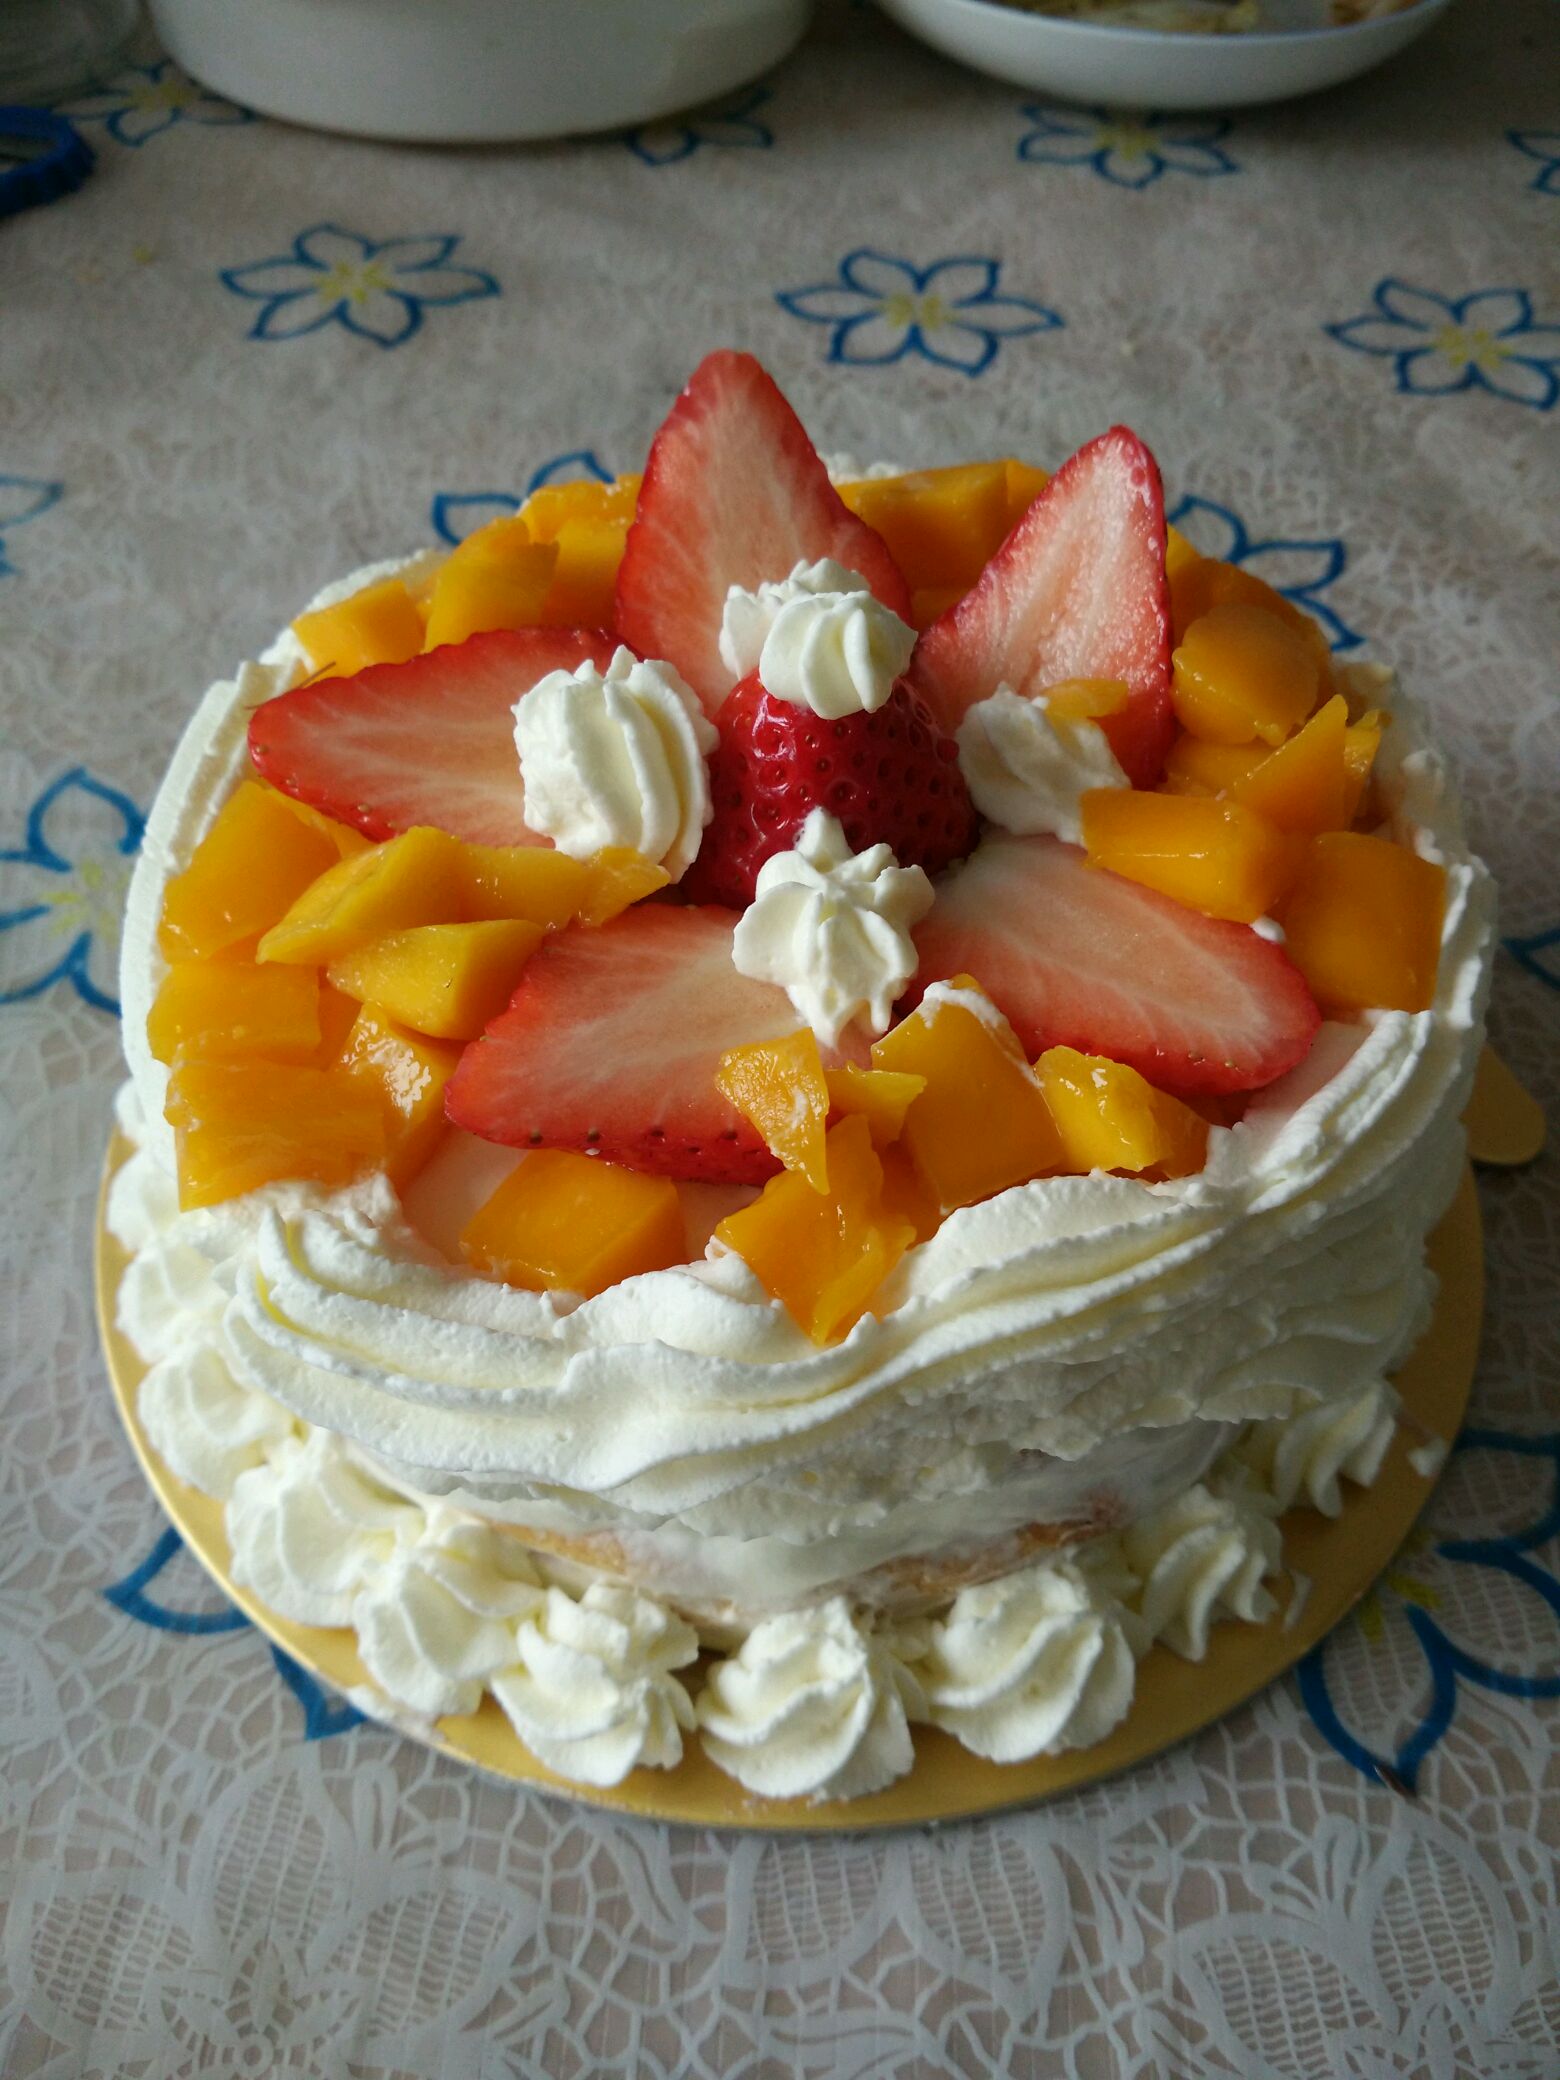 双层水果奶油蛋糕-图库-五毛网